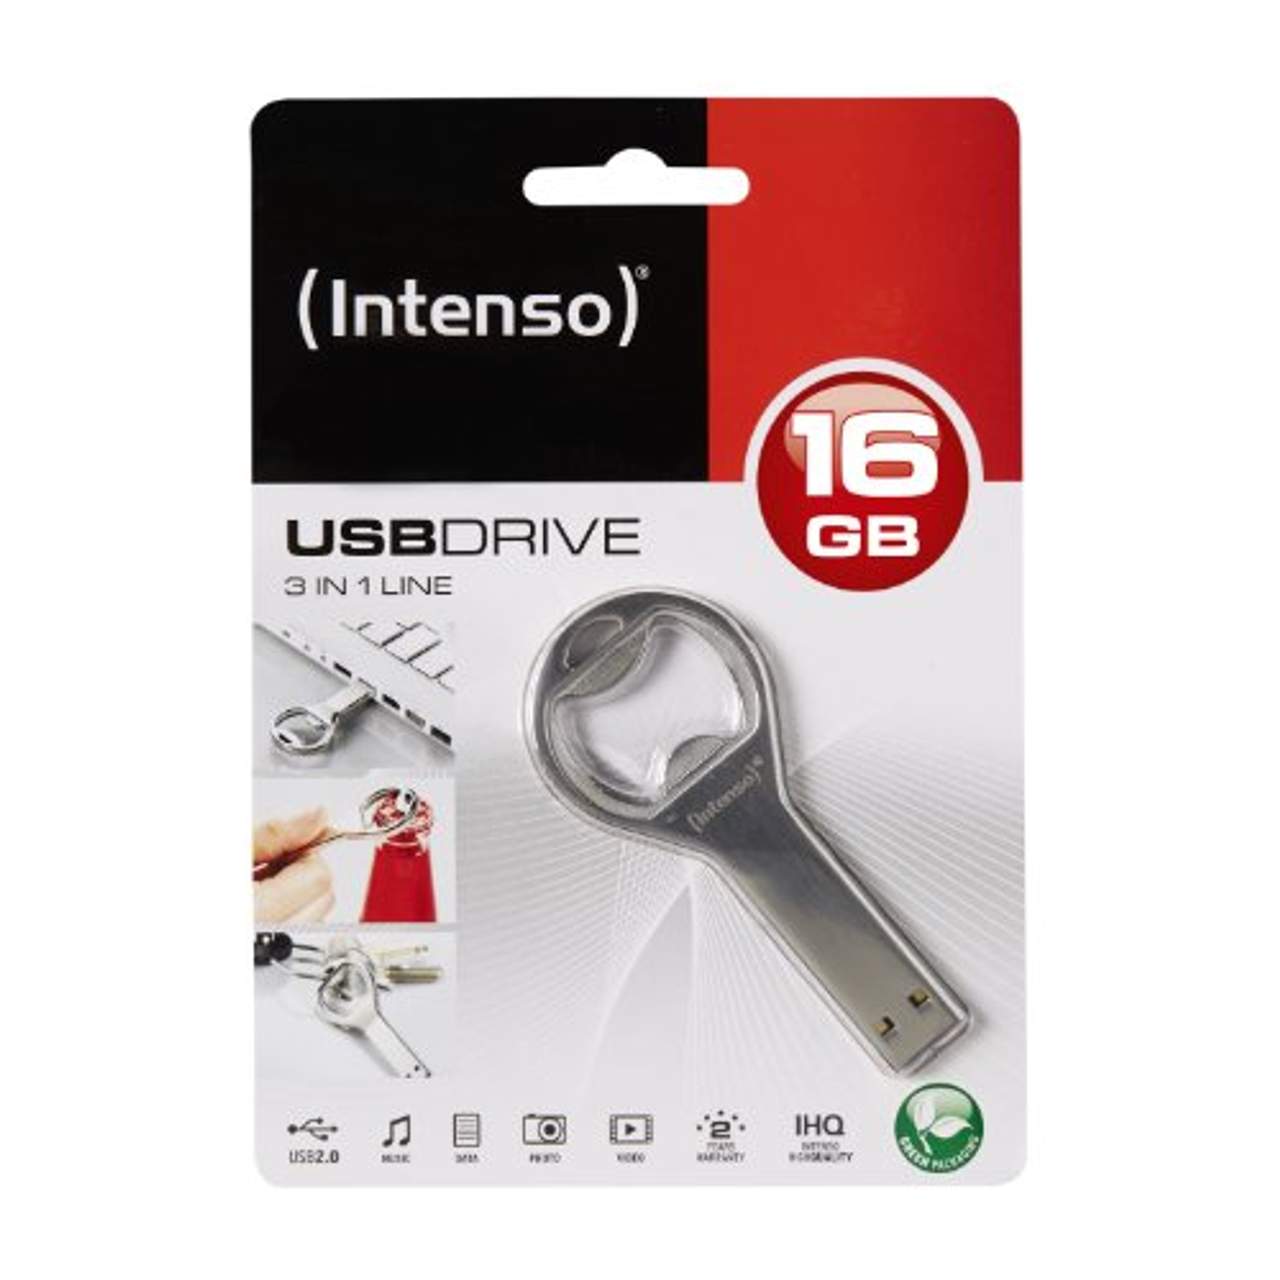 Intenso 3in1 Line 16 GB USB-Stick USB 2.0